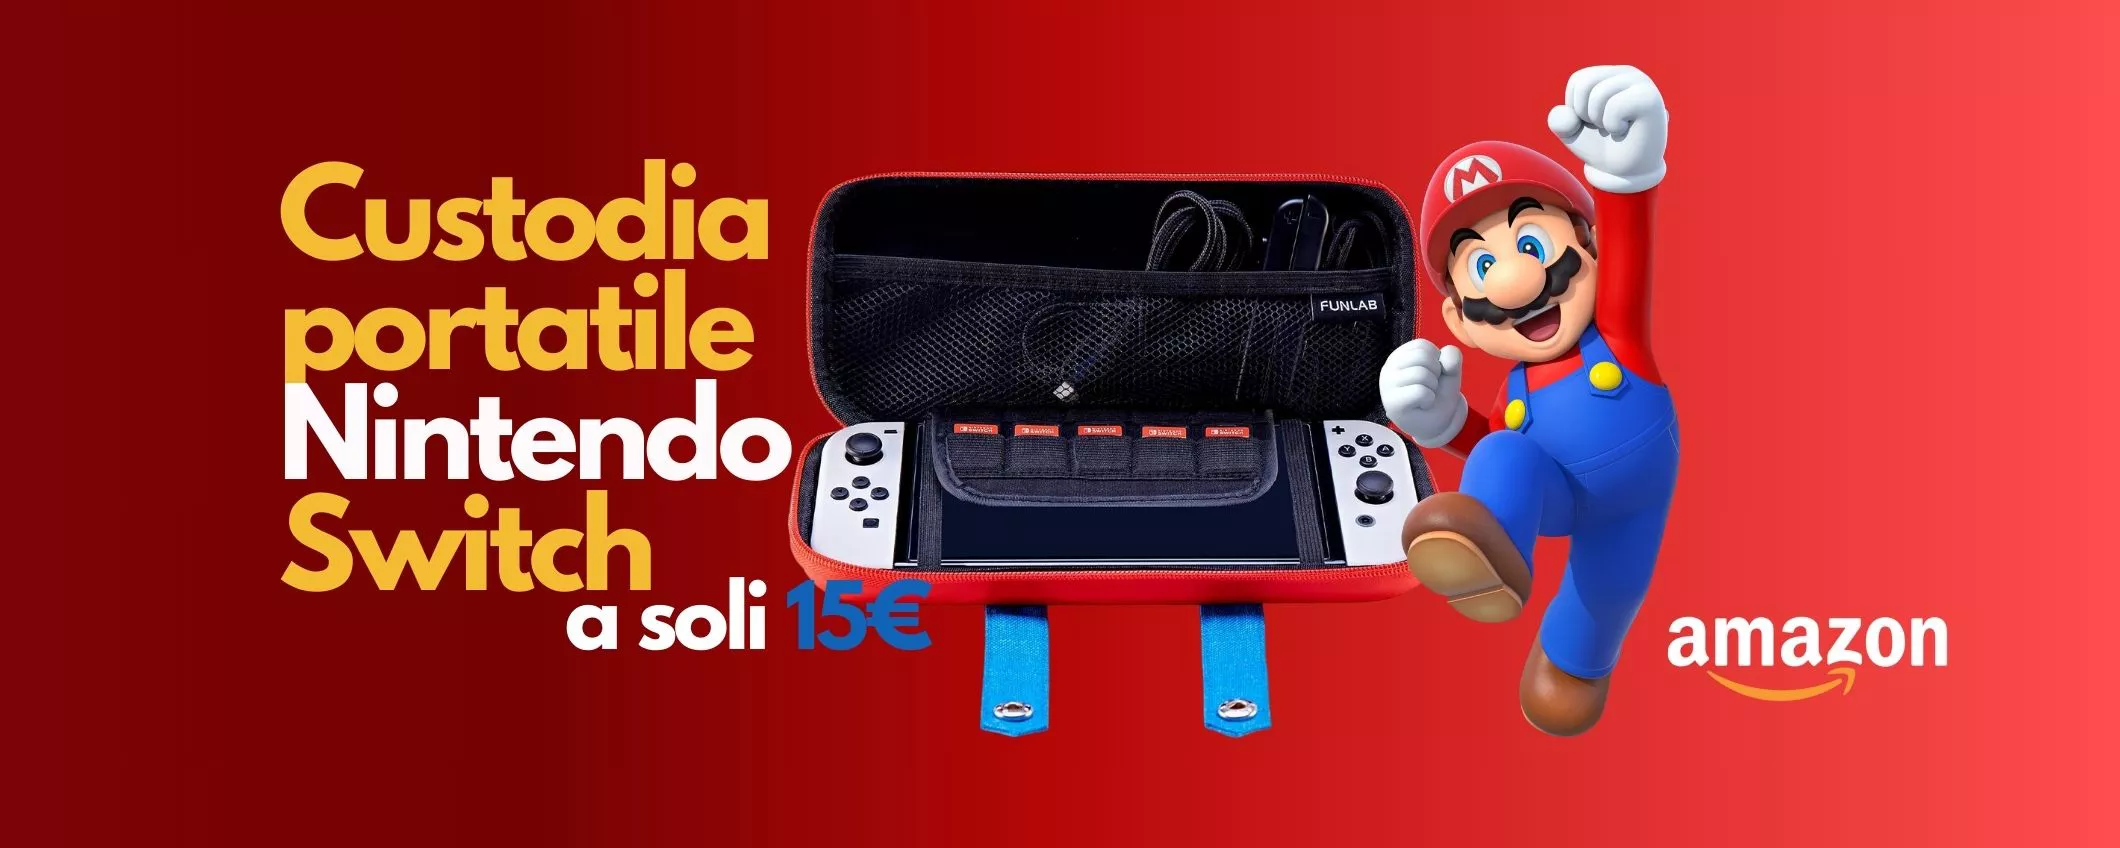 Nintendo Switch, la STILOSA custodia portatile di Super Mario a soli 15€ su   - Webnews